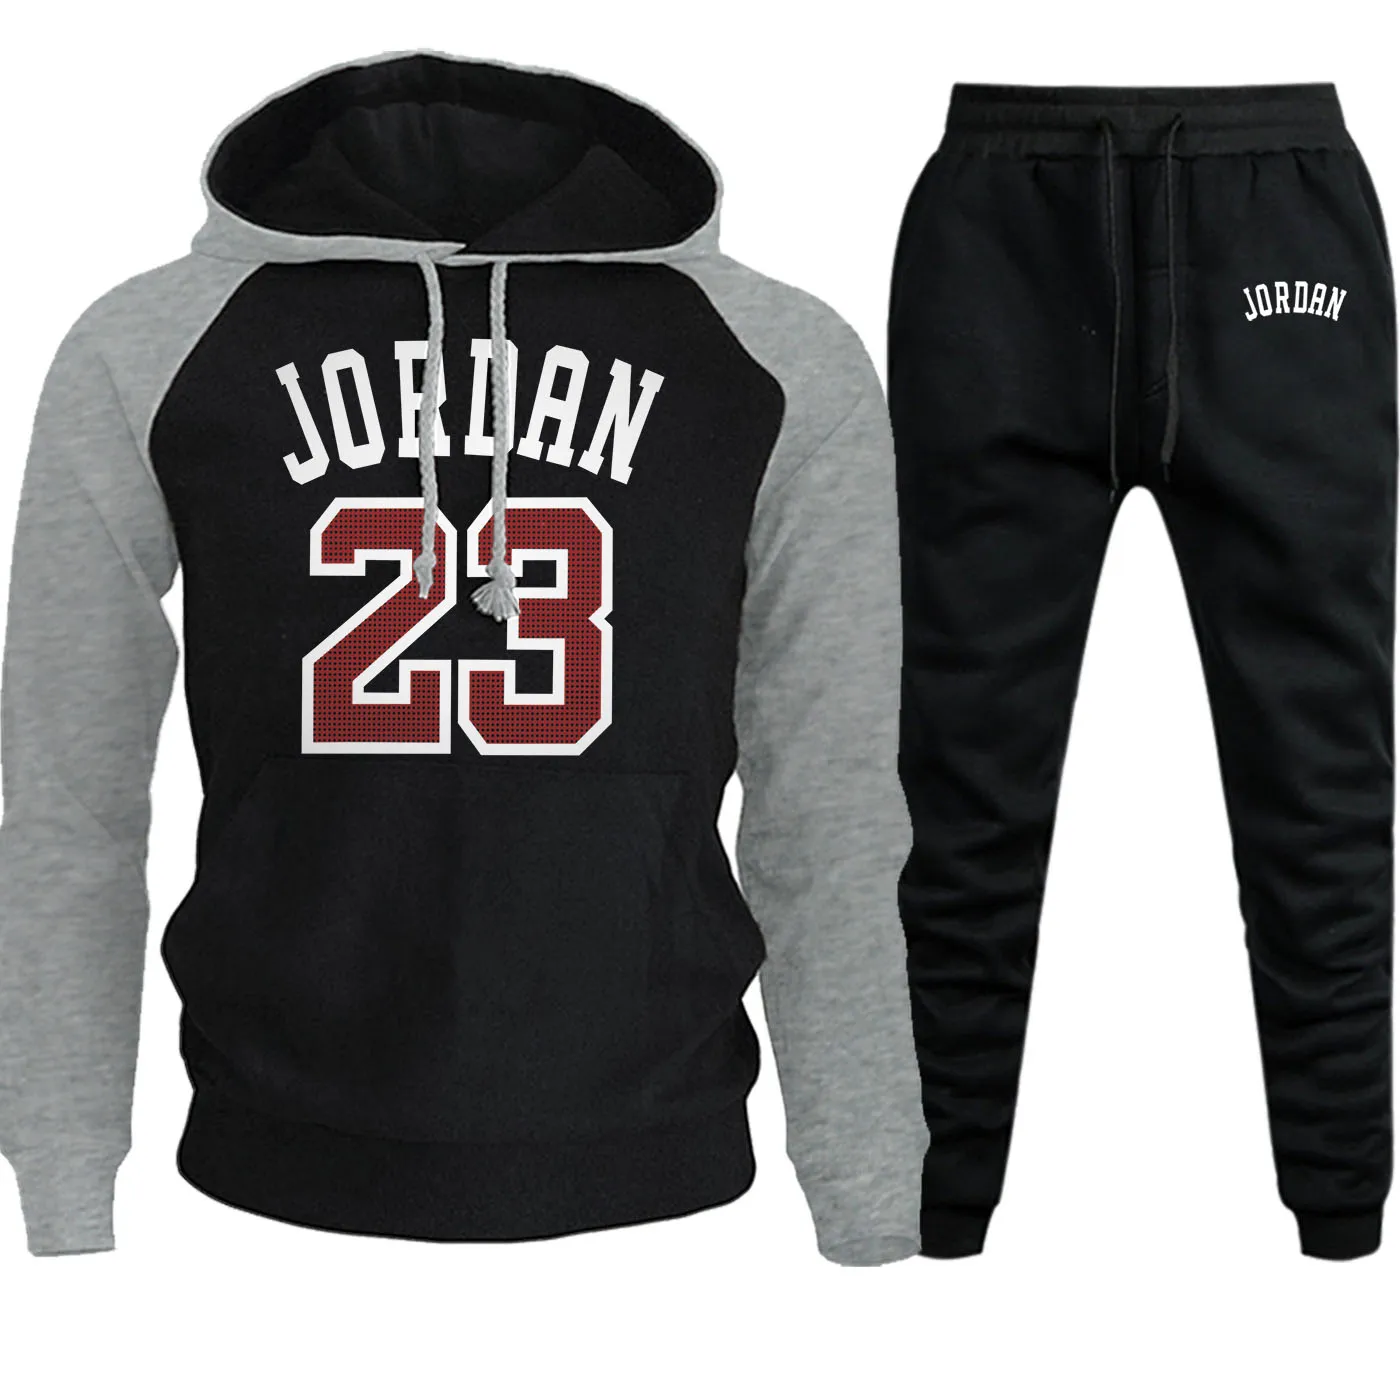 Jordan 23 толстовки Мужские осенне-зимние толстовки реглан Повседневный пуловер модный костюм с капюшоном уличная одежда+ спортивные штаны комплект из 2 предметов - Цвет: gray black6